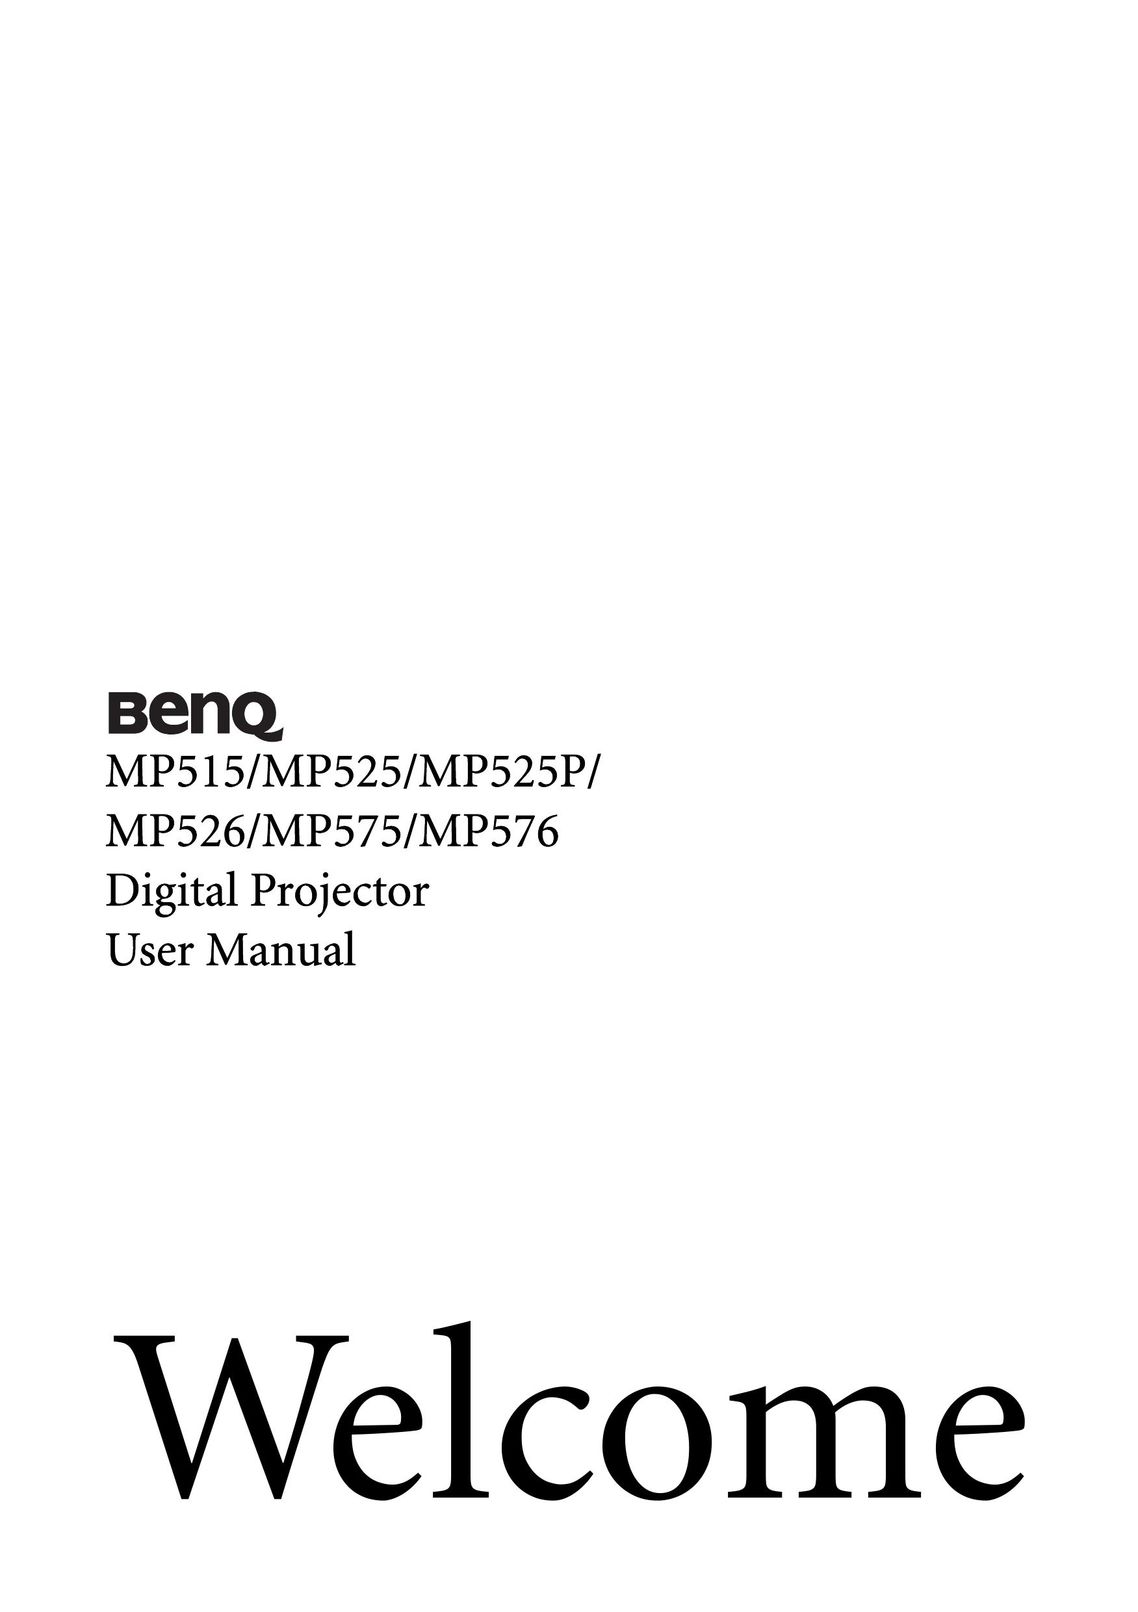 BenQ MP575 Projector User Manual